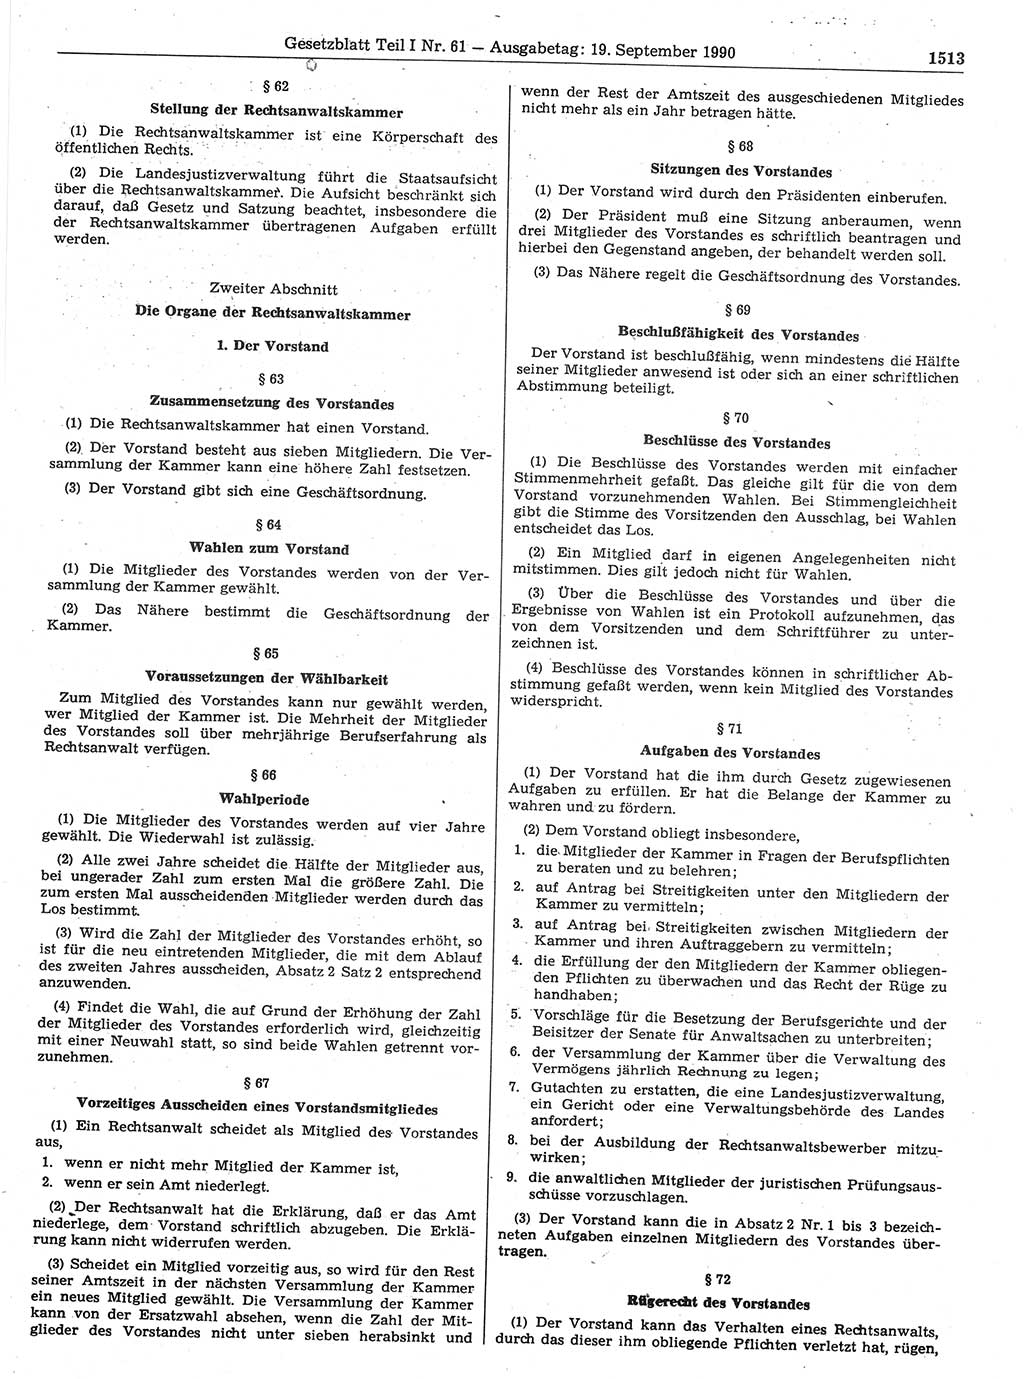 Gesetzblatt (GBl.) der Deutschen Demokratischen Republik (DDR) Teil Ⅰ 1990, Seite 1513 (GBl. DDR Ⅰ 1990, S. 1513)